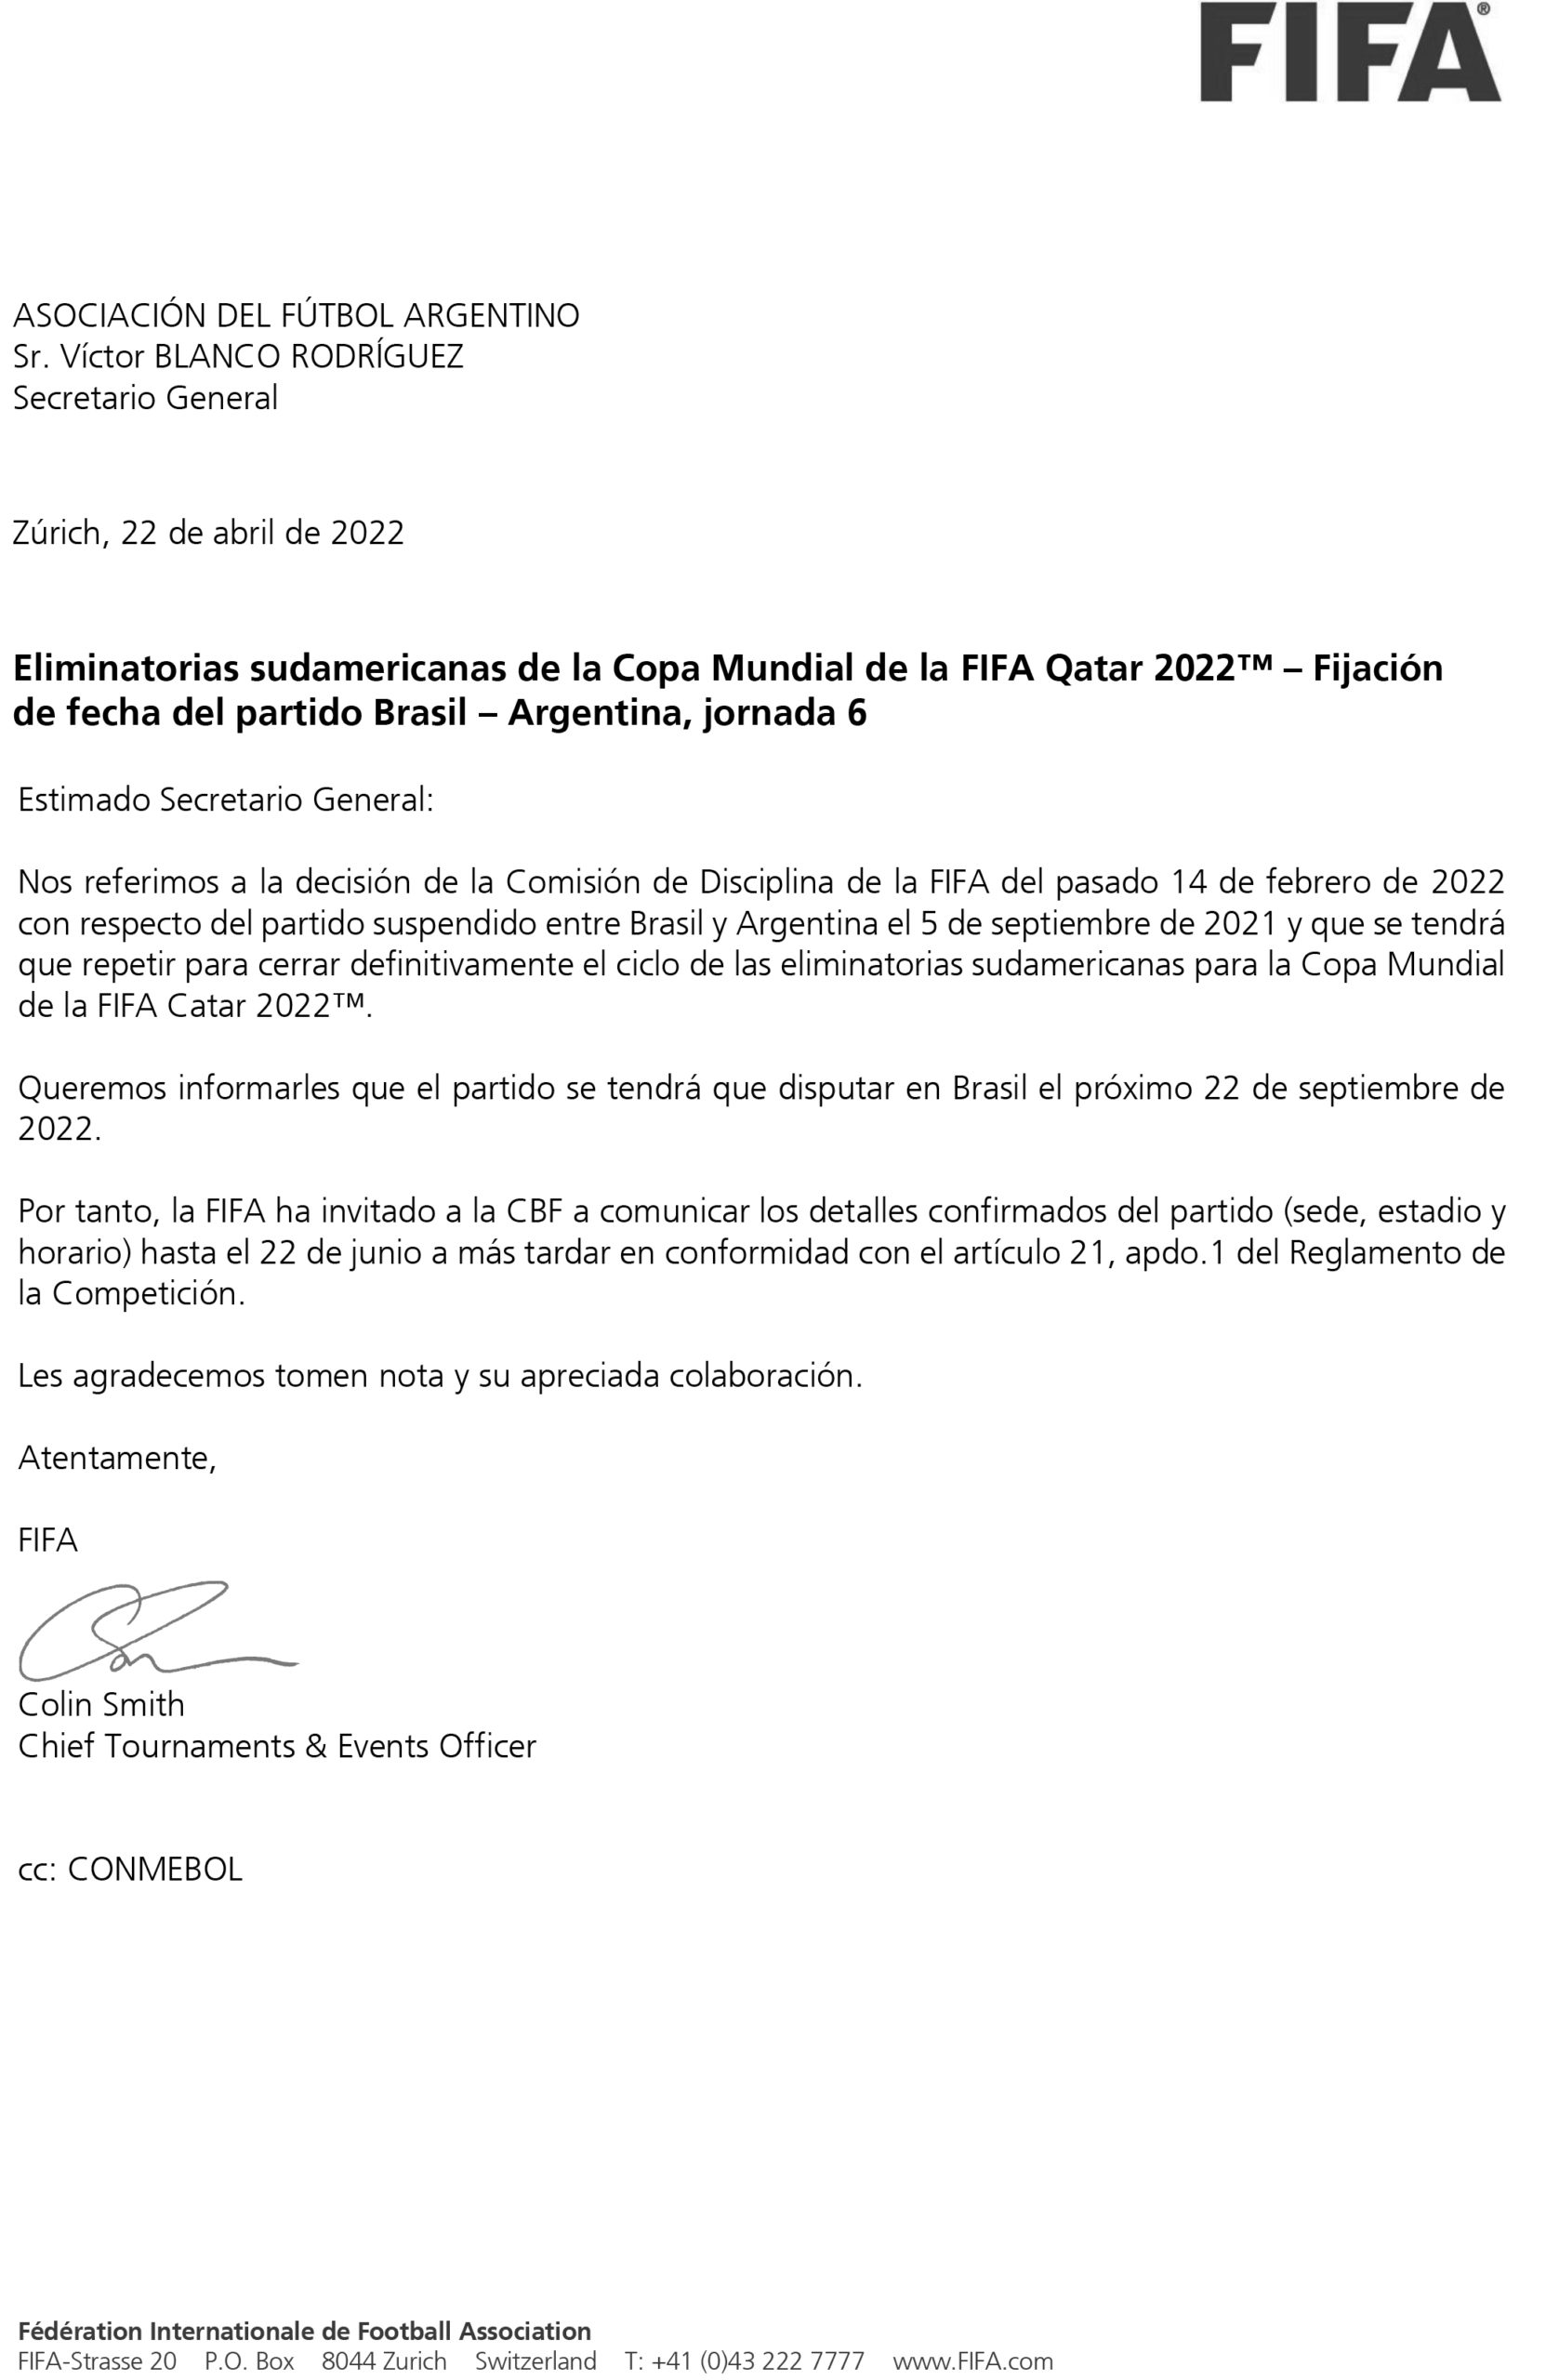 FIFA anunció cuándo se jugará el Brasil - Argentina suspendido por Eliminatorias | Canal Showsport